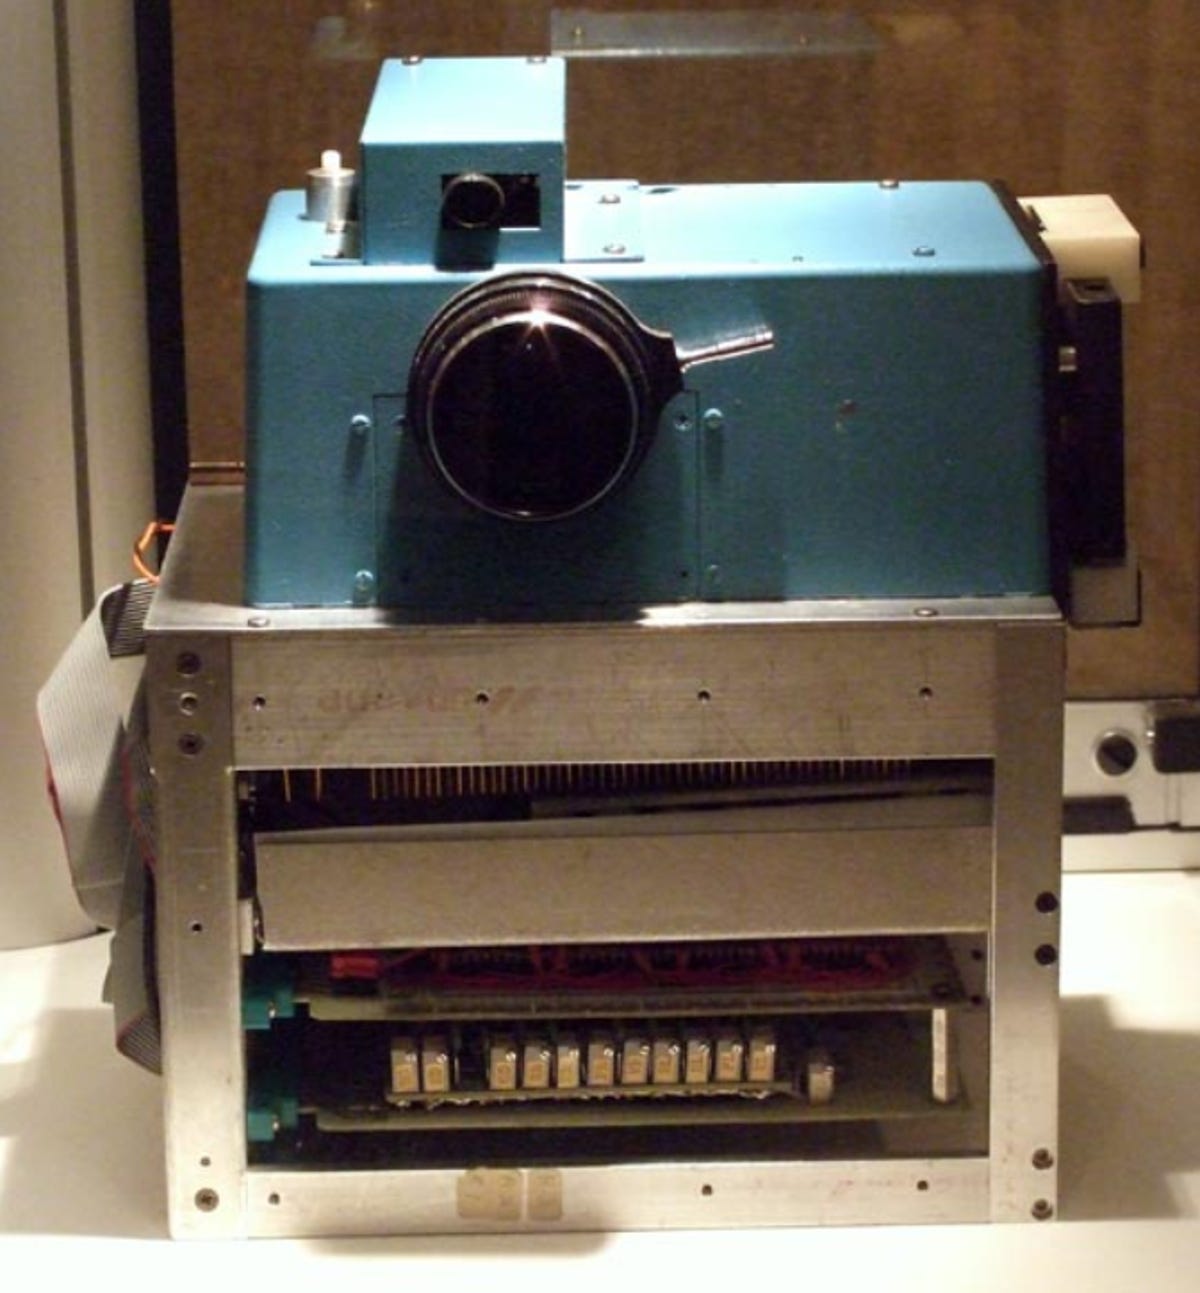 kodak-prototype-digital-camera